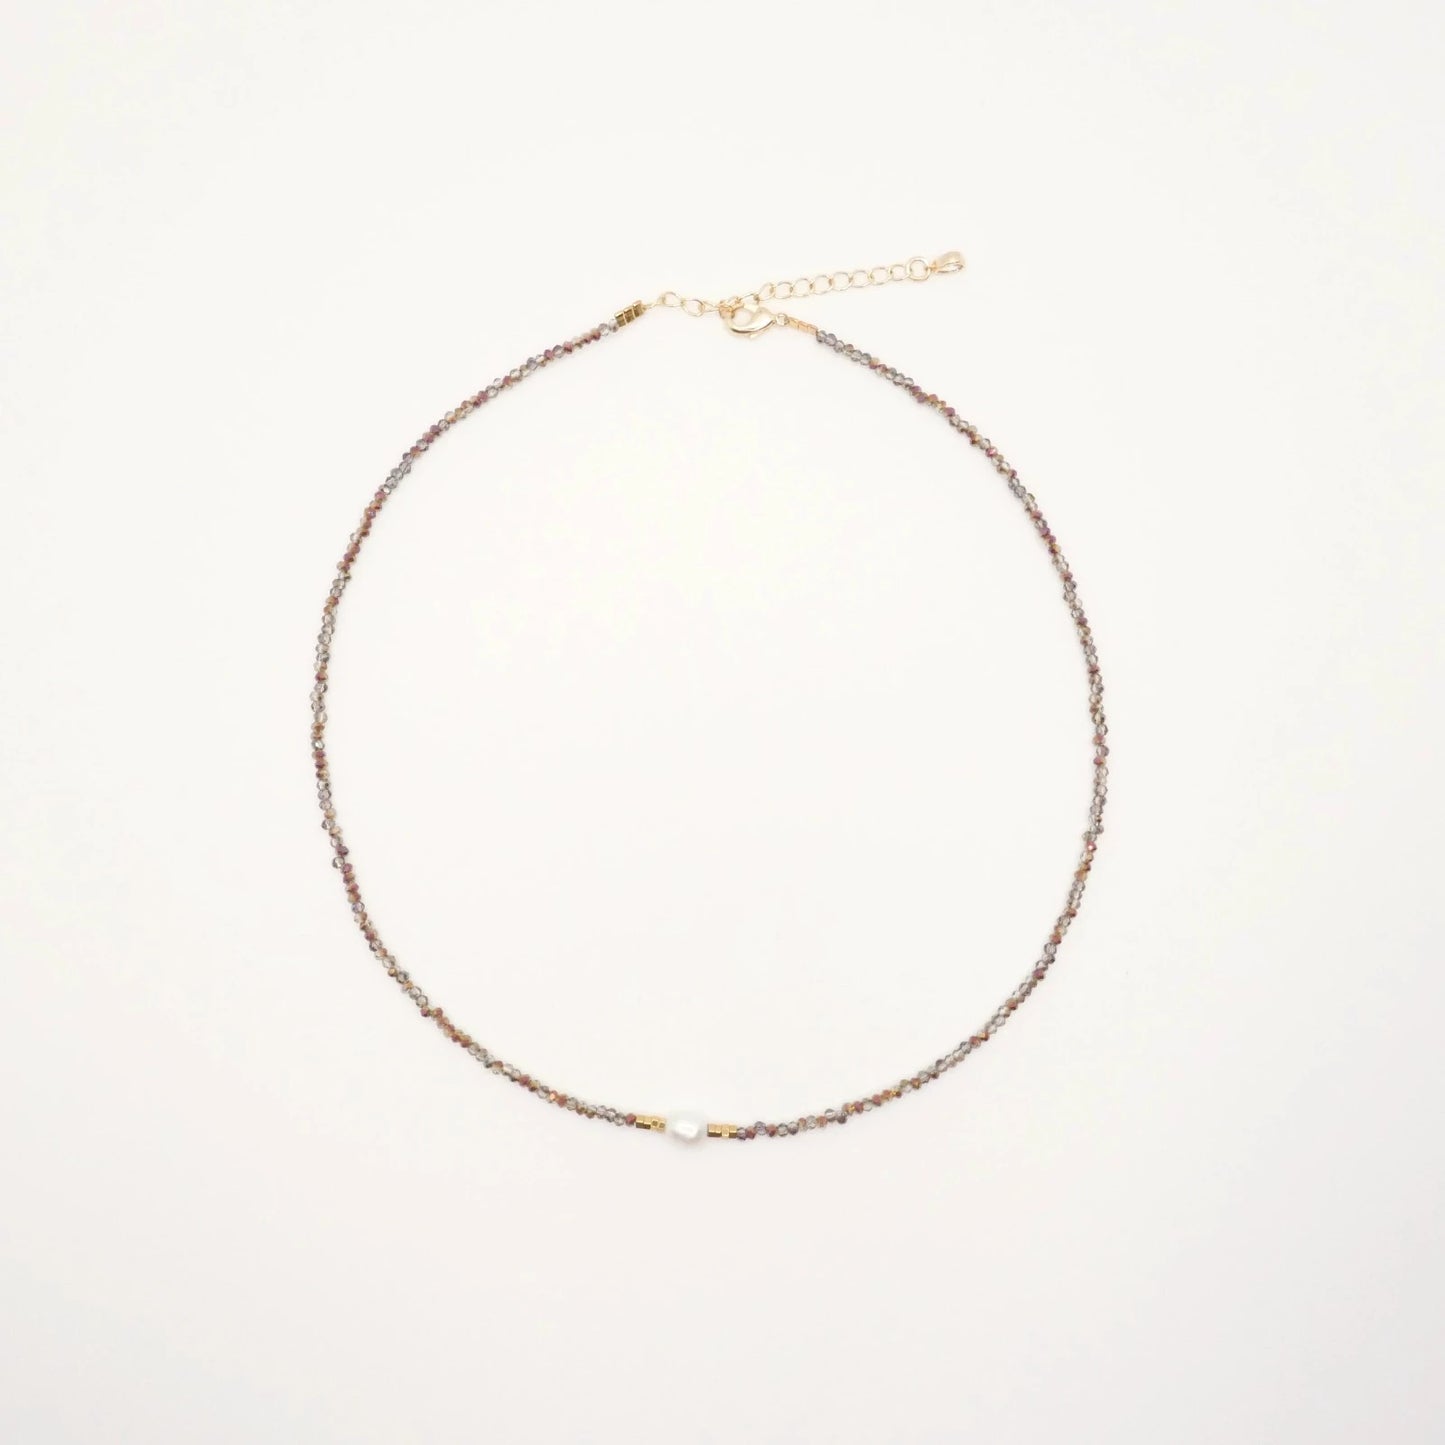 Fin collier pour femme avec de petites perles transparentes irisées et une belle perle d'eau douce au centre